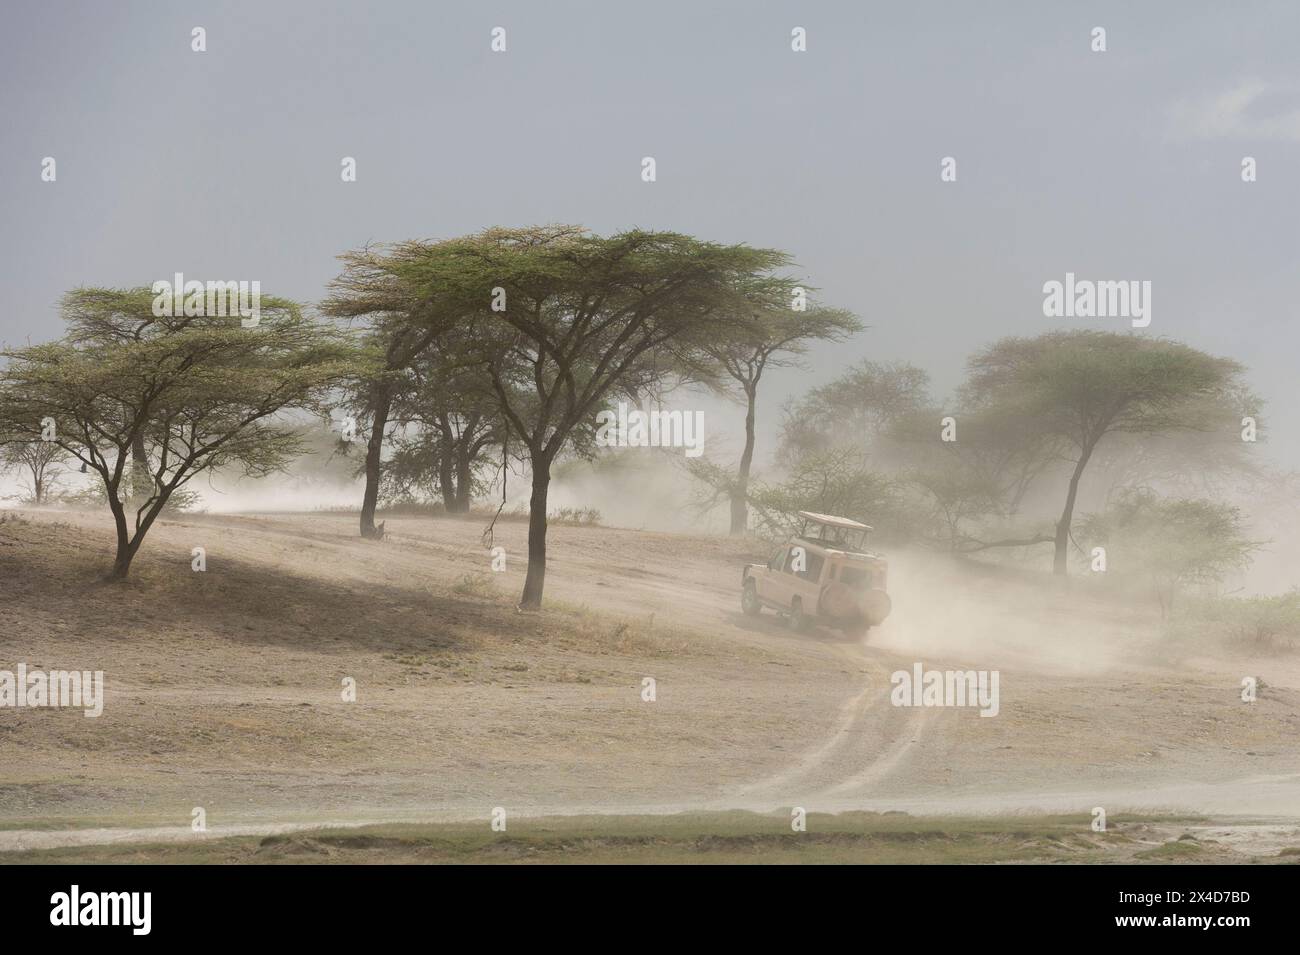 Un véhicule de safari roulant sur une route poussiéreuse.Ndutu, zone de conservation de Ngorongoro, Tanzanie Banque D'Images